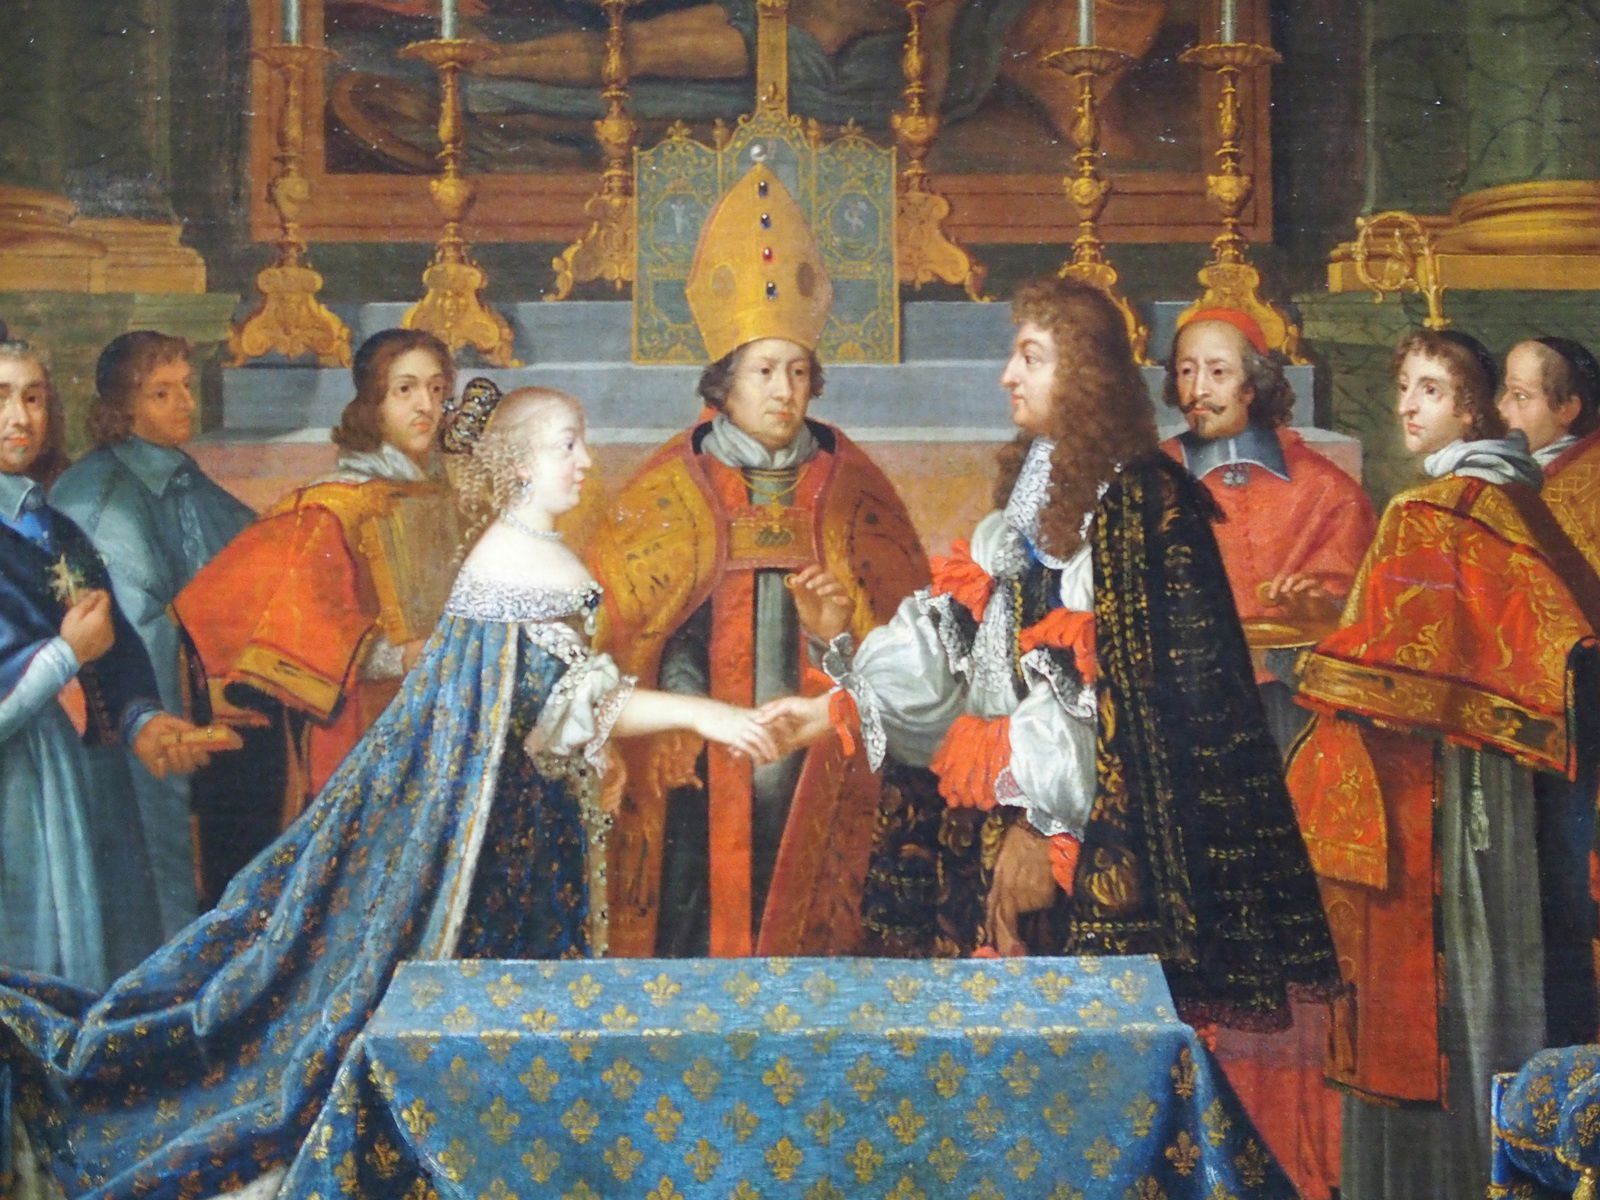 Mariage Historique de Louis XIII avec l'Infante Espagnole Anne d'Autriche